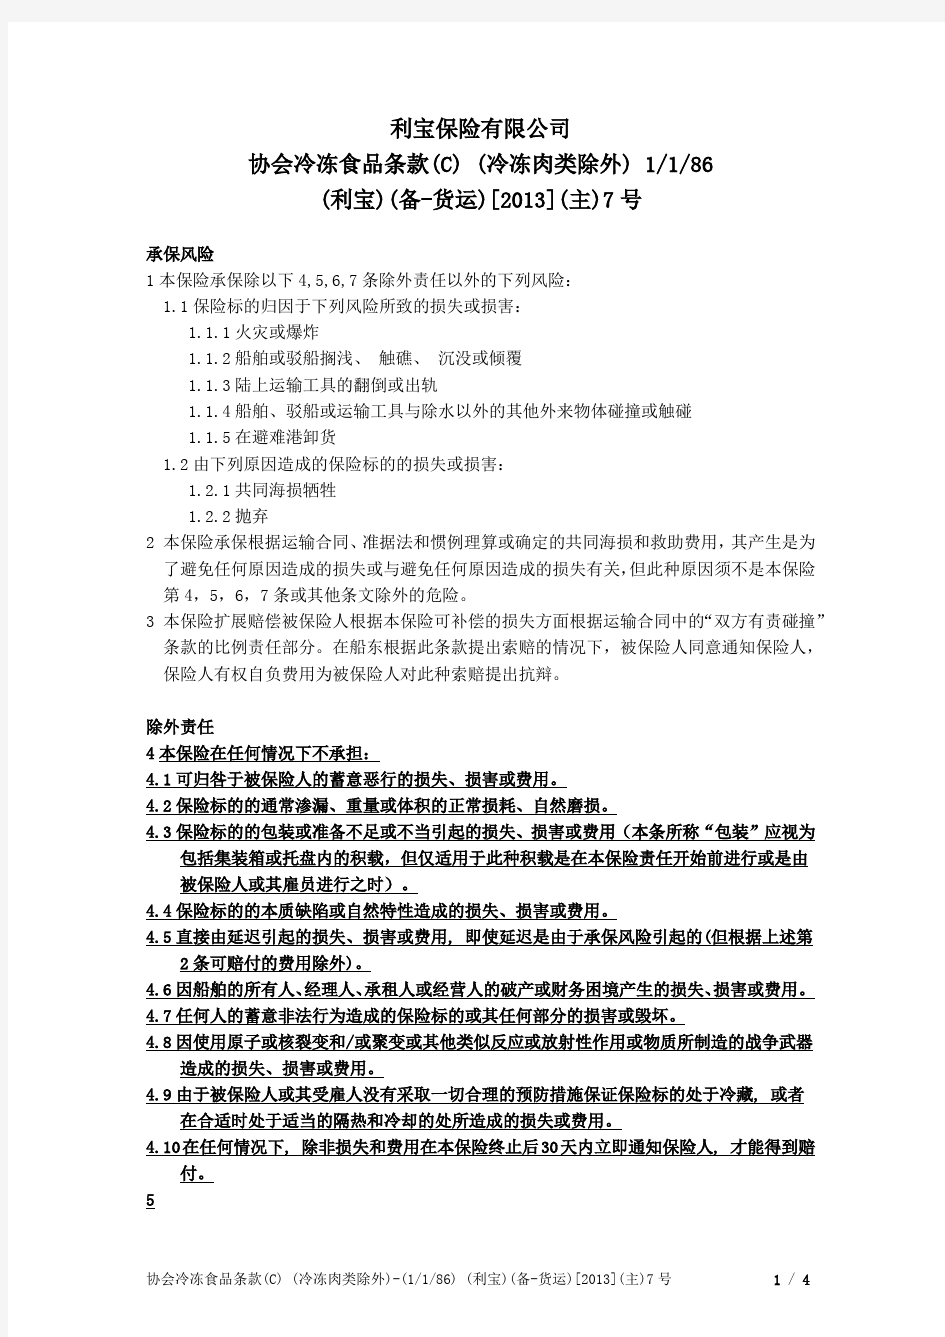 利宝保险有限公司协会冷冻食品条款(C)(冷冻肉类除外)-中文